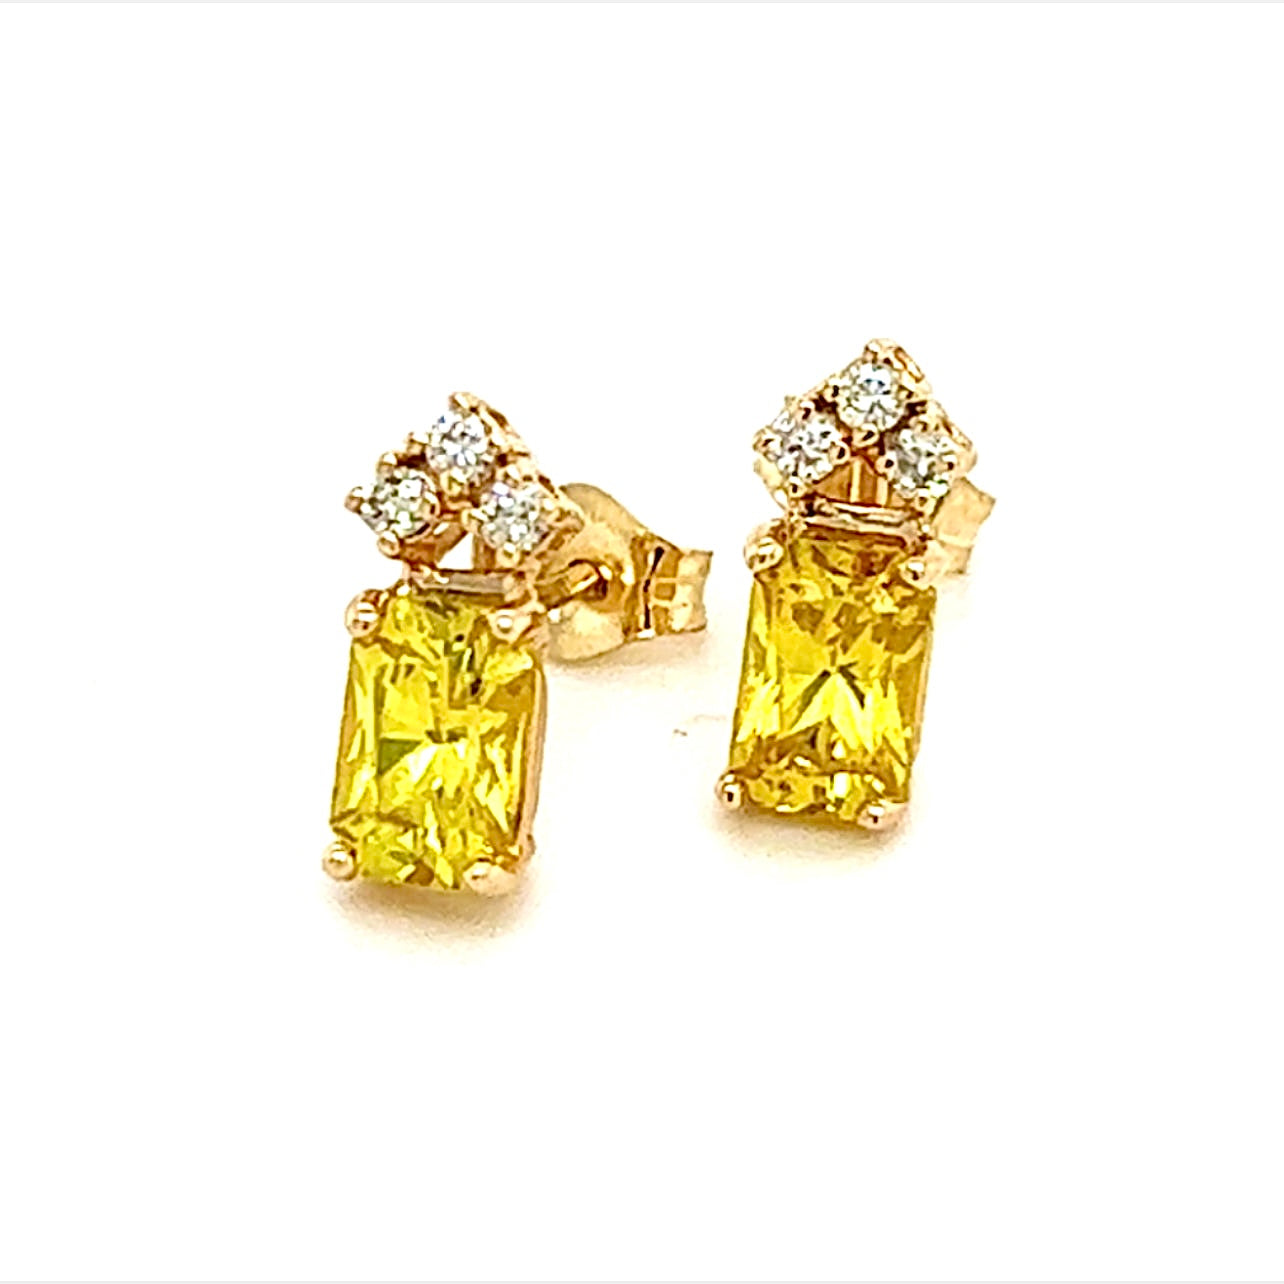 Natural Sapphire Diamond Earrings 14k Gold 1.74 TCW Certified $1,590 121260 - Certified Fine Jewelry